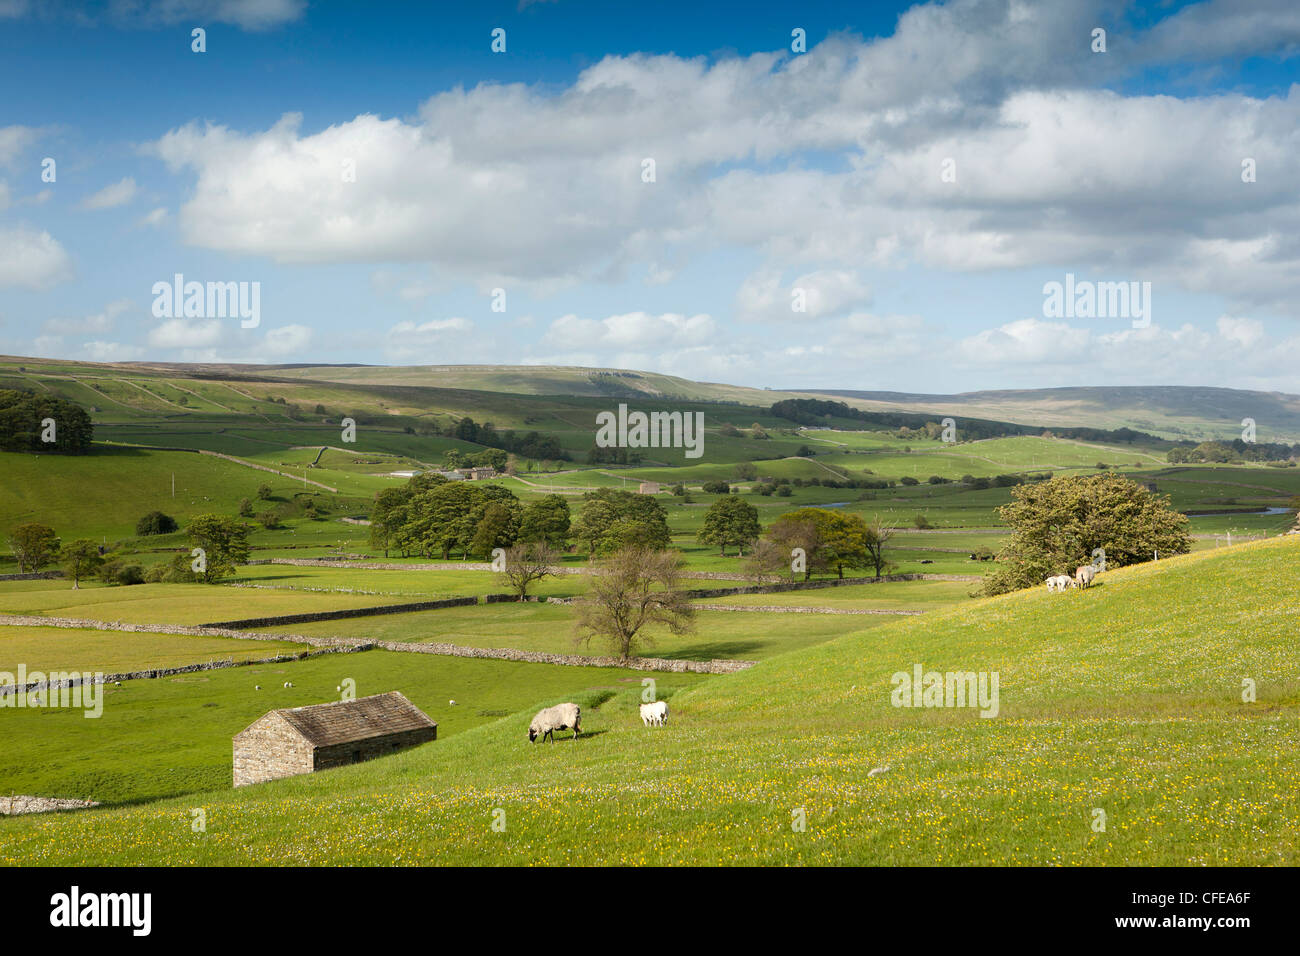 Regno Unito, Inghilterra, Yorkshire, Wensleydale, agricoltura, pecore al pascolo nelle valli lussureggianti terreni agricoli Foto Stock